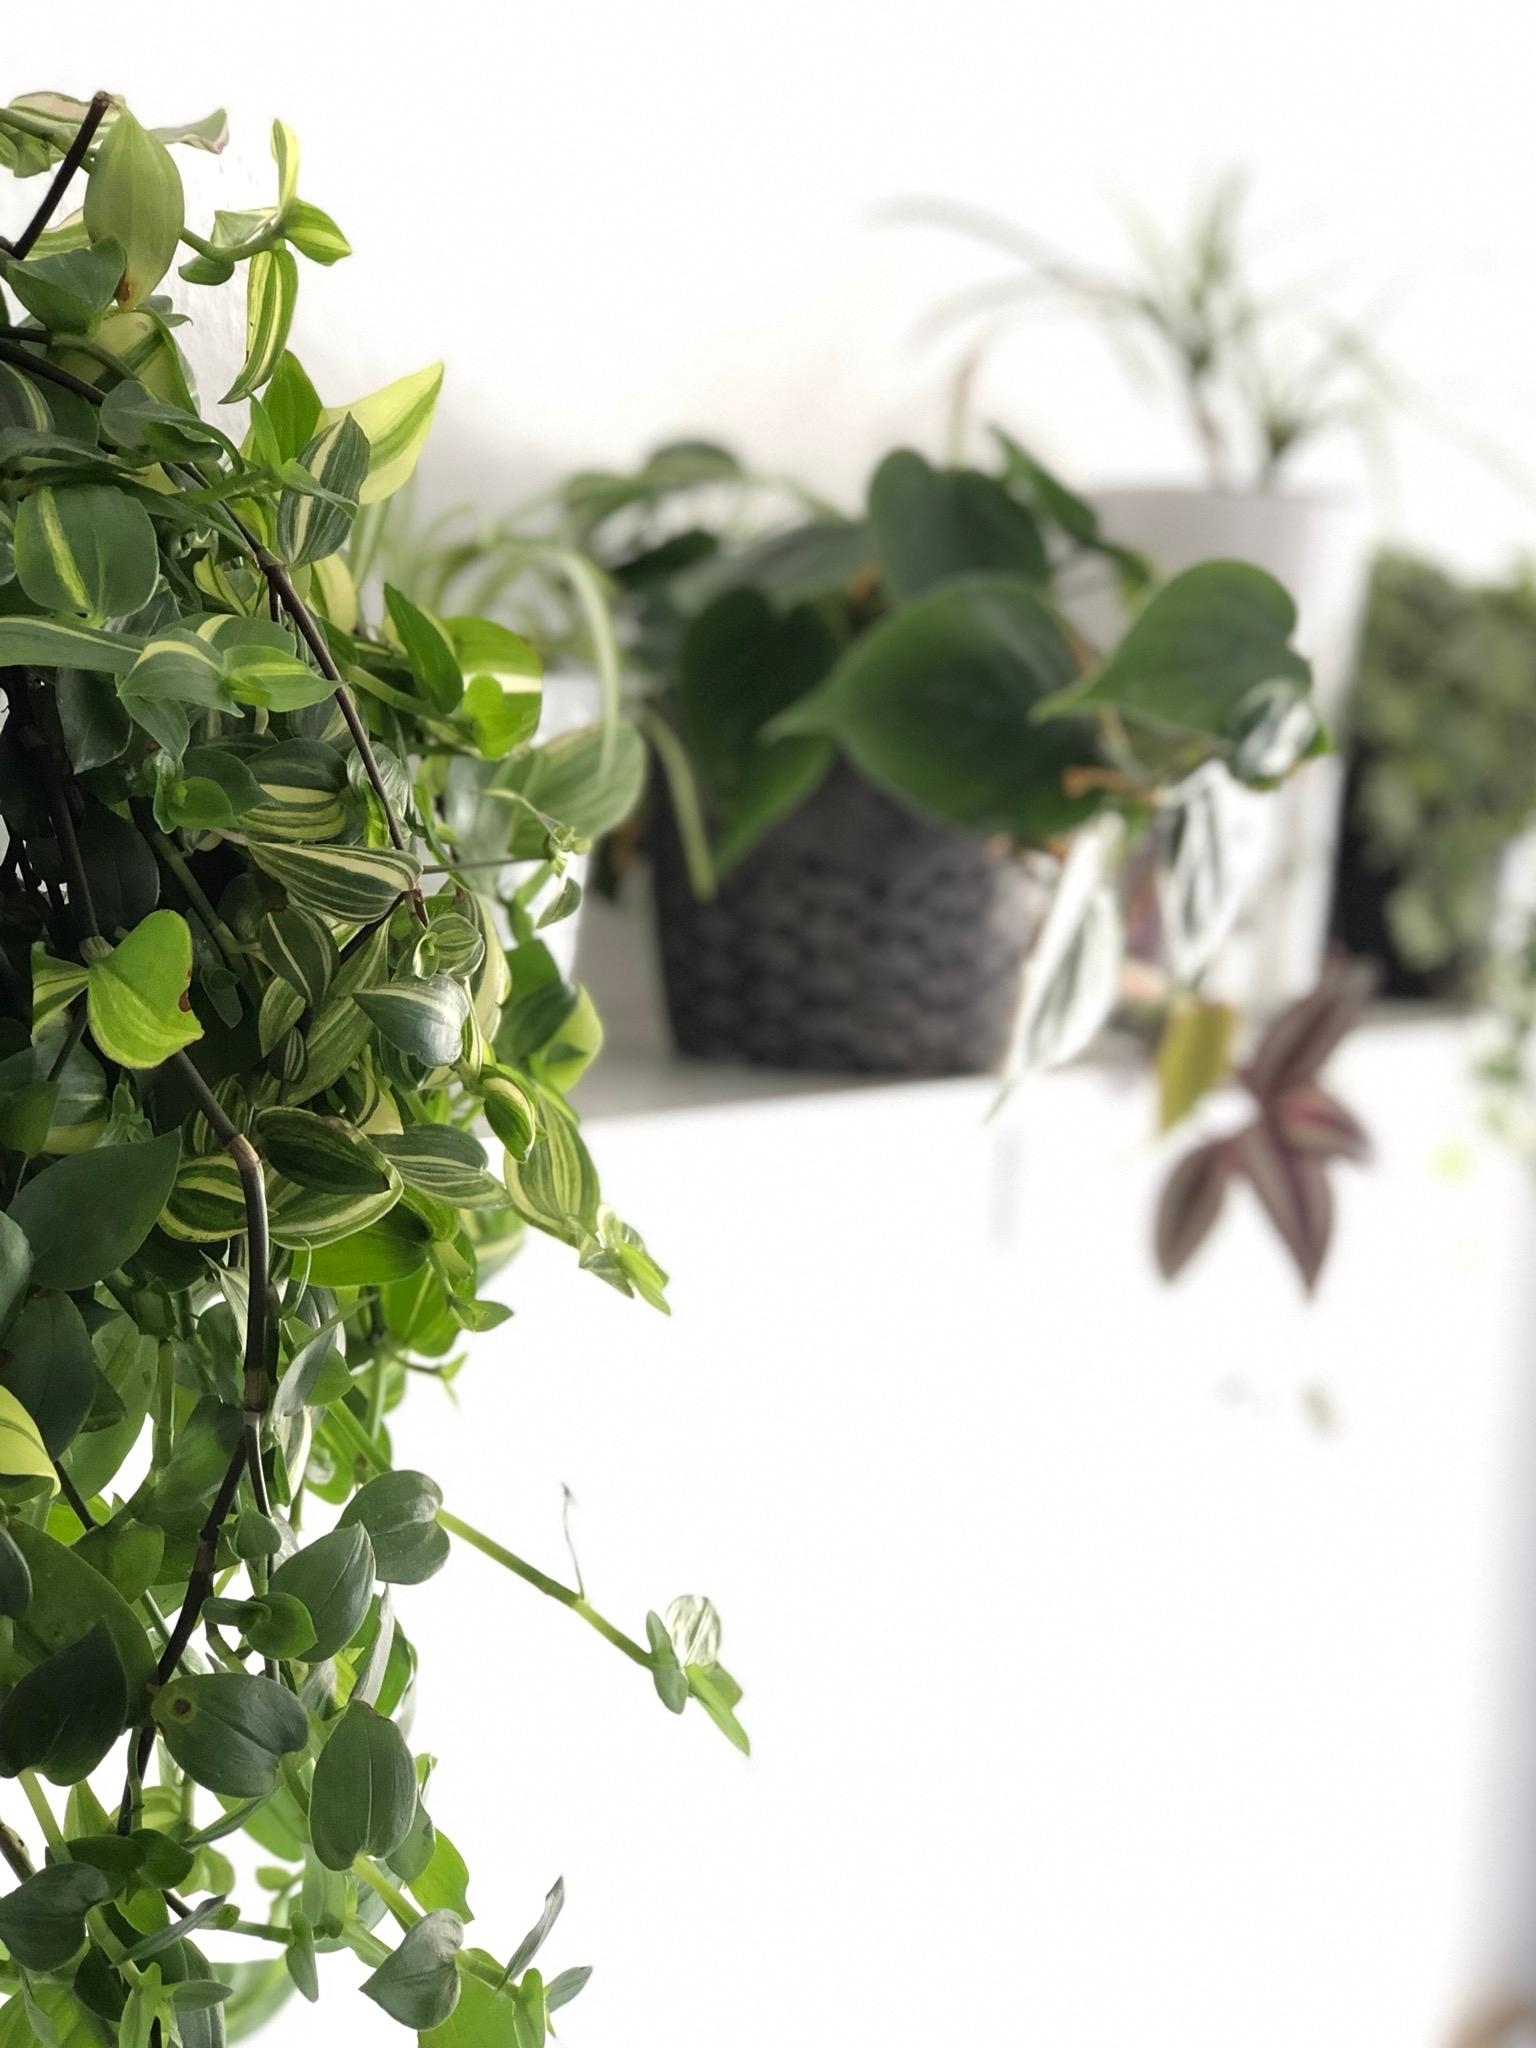 Mein Pflanzenregal wächst 🌿 #plantlove #mybedroom #plantsininterior